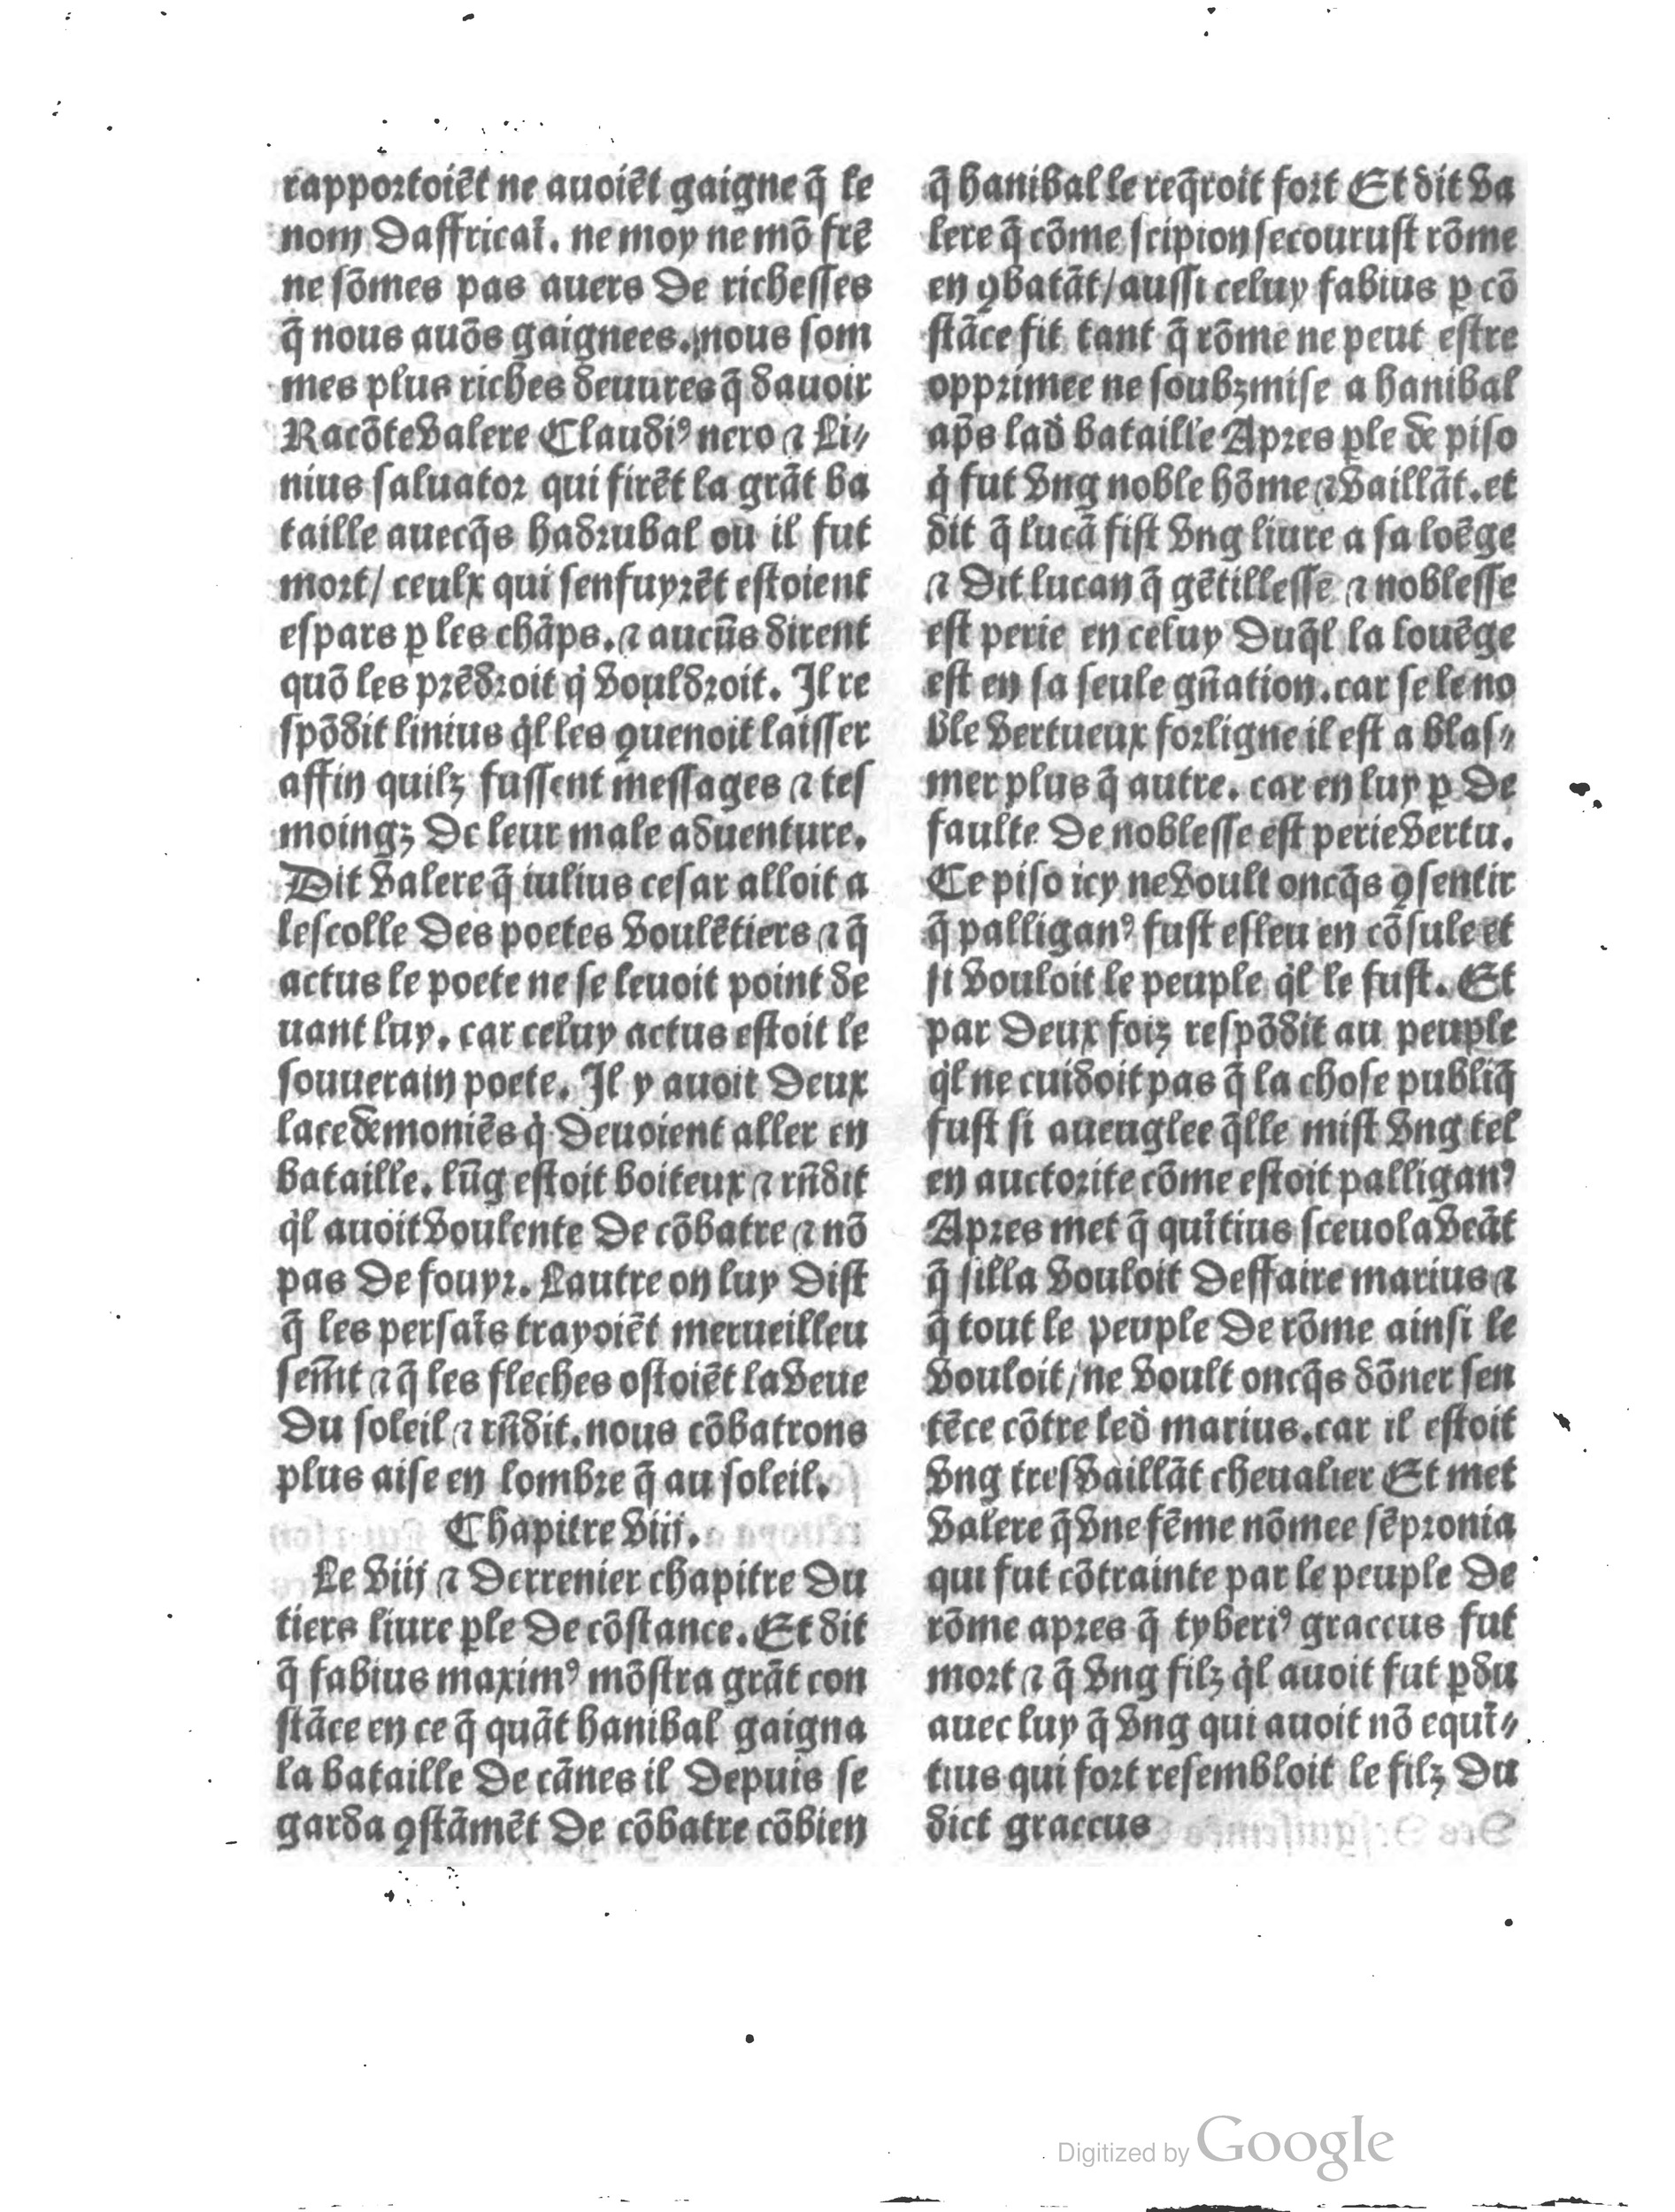 1497 Trésor de noblesse Vérard_BM Lyon_Page_138.jpg